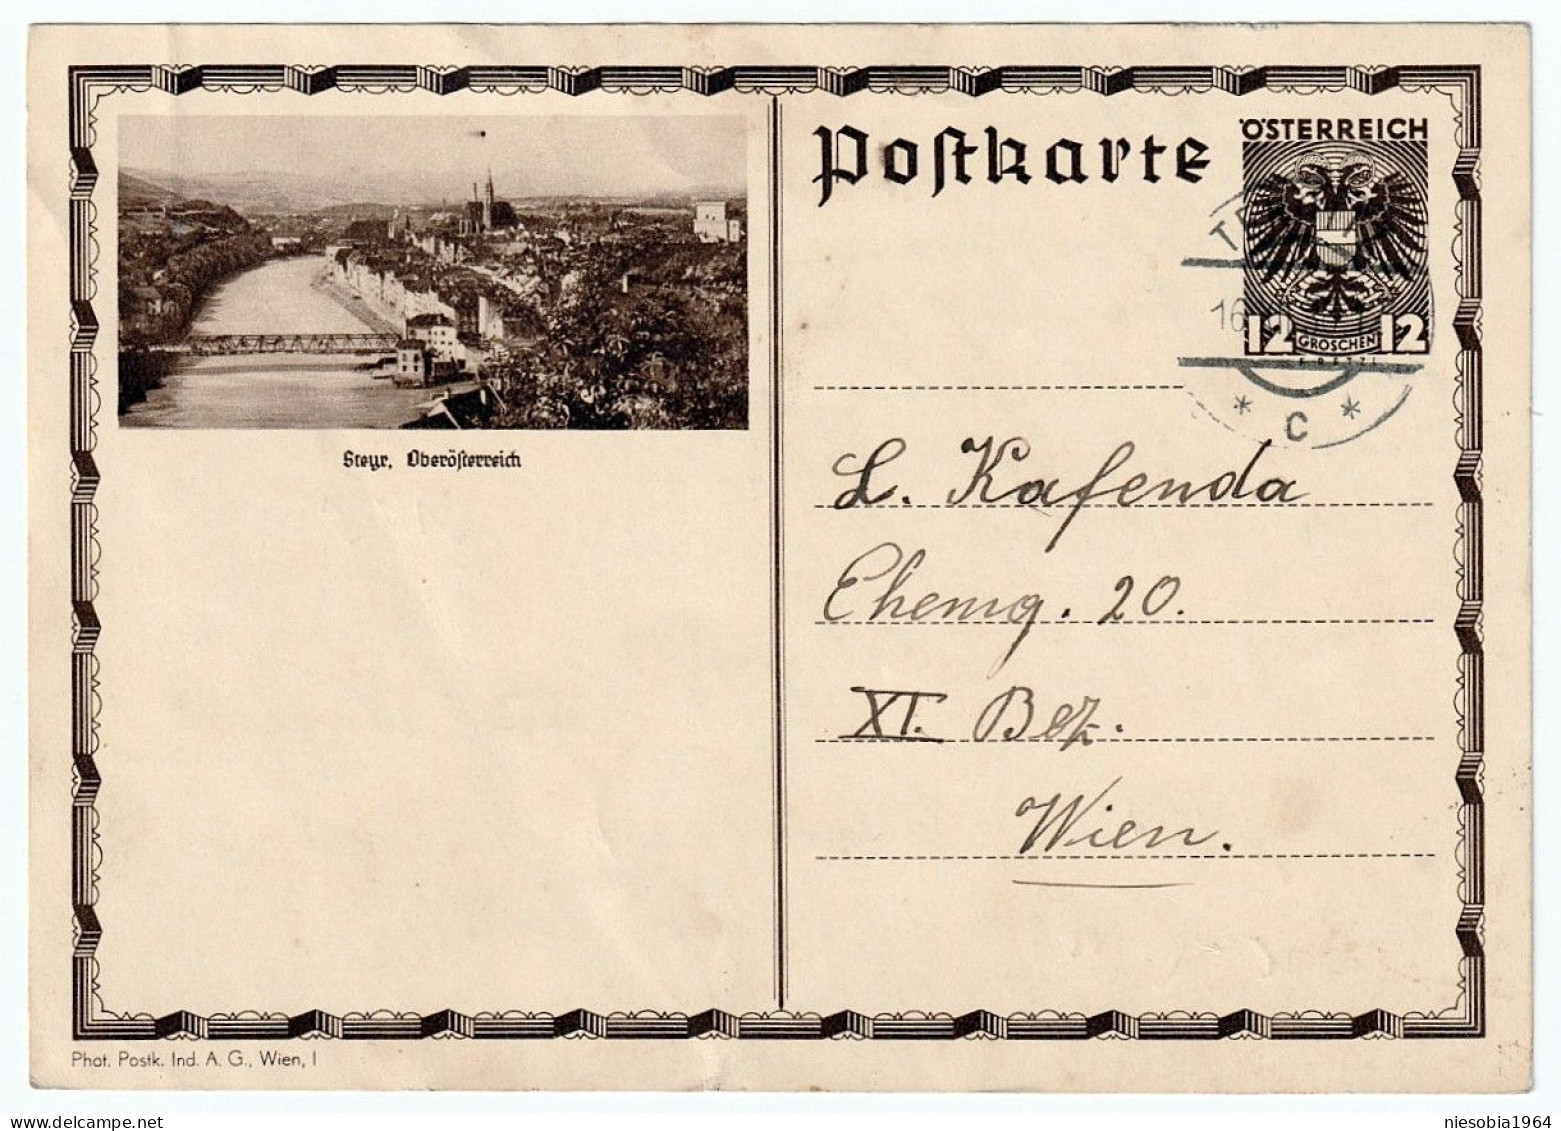 Österreich 12 Groschen Postkarte, Steyr, Oberösterreich - Siegel Ternitz 6 XII 1930 - Lettres & Documents